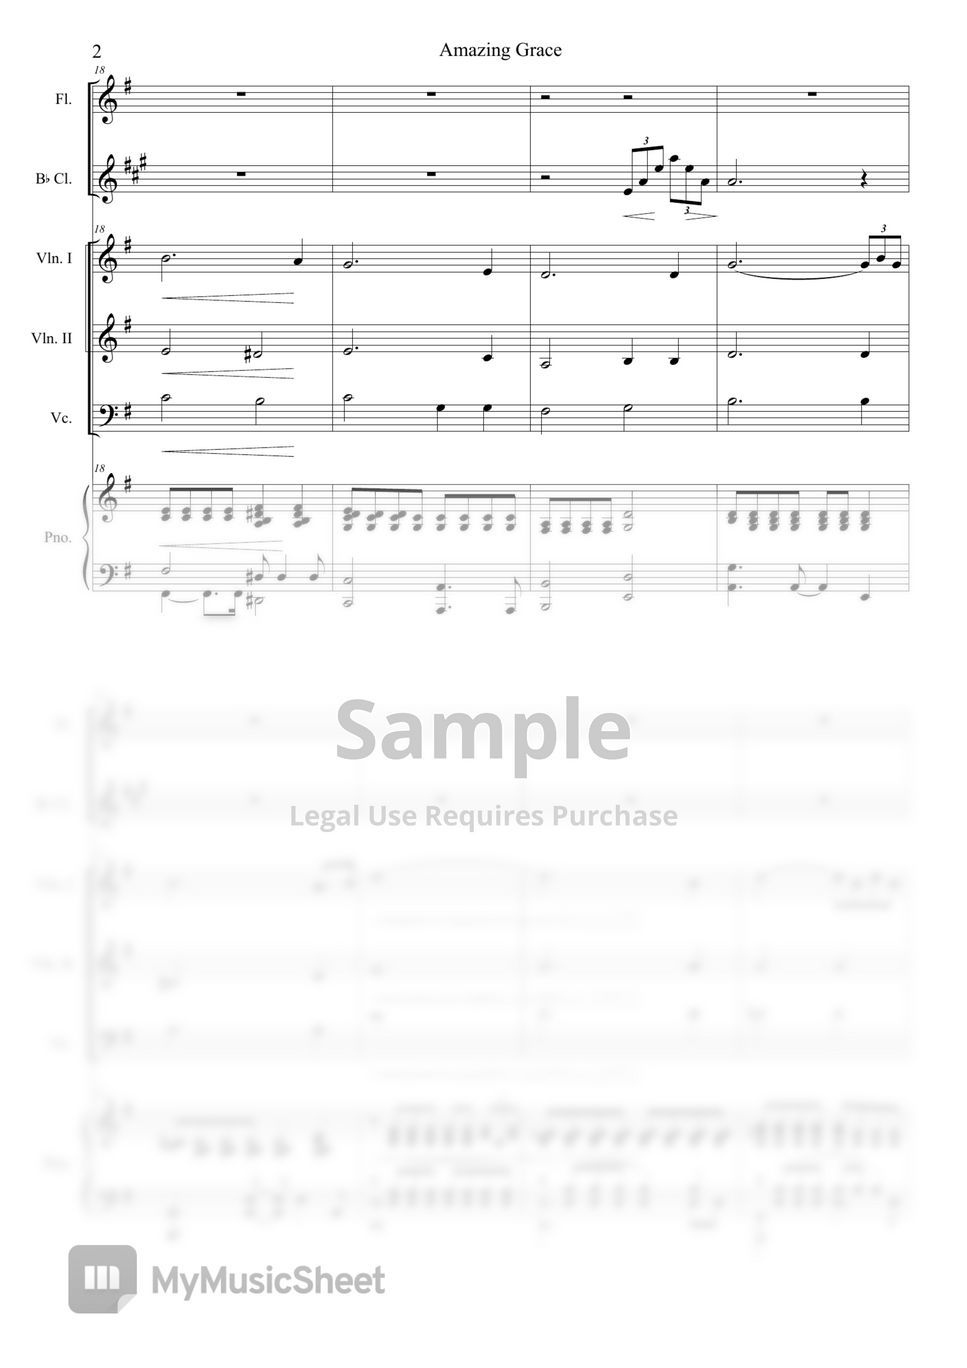 John Newton - Amazing Grace for Ensemble(Fl.Cl.vn1,2,vc,pno) by sorahong